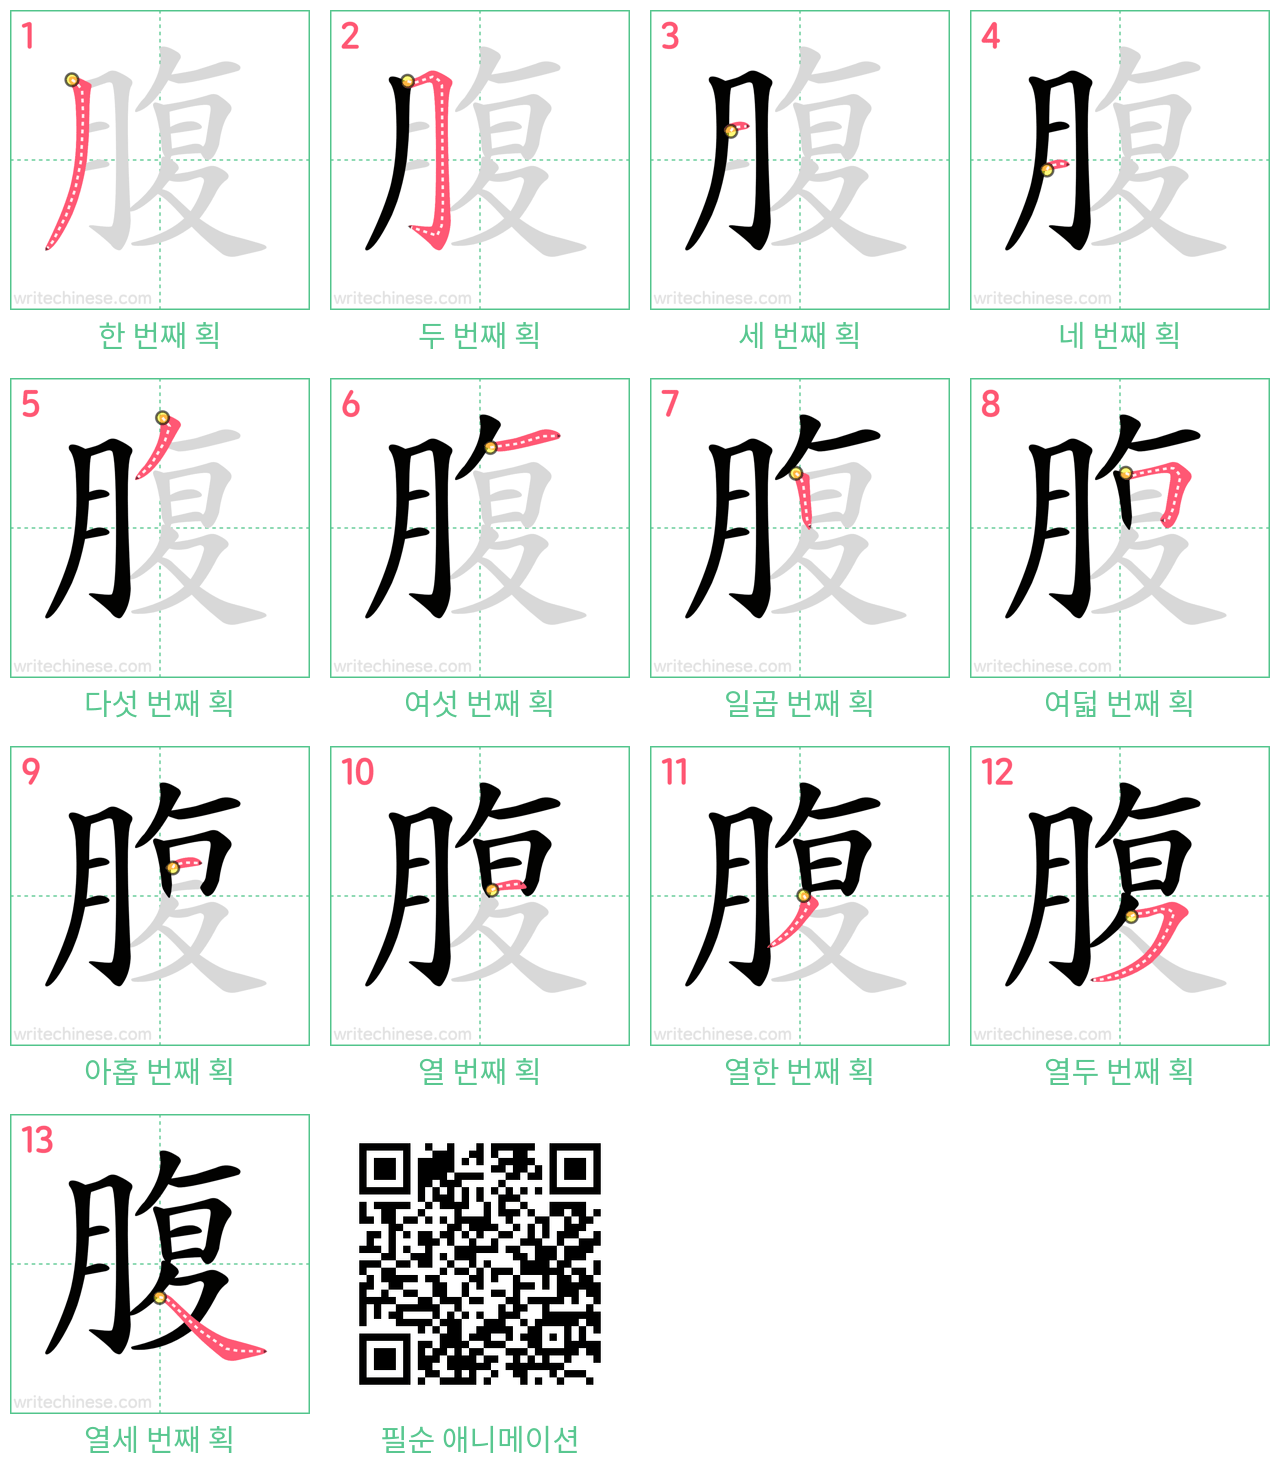 腹 step-by-step stroke order diagrams